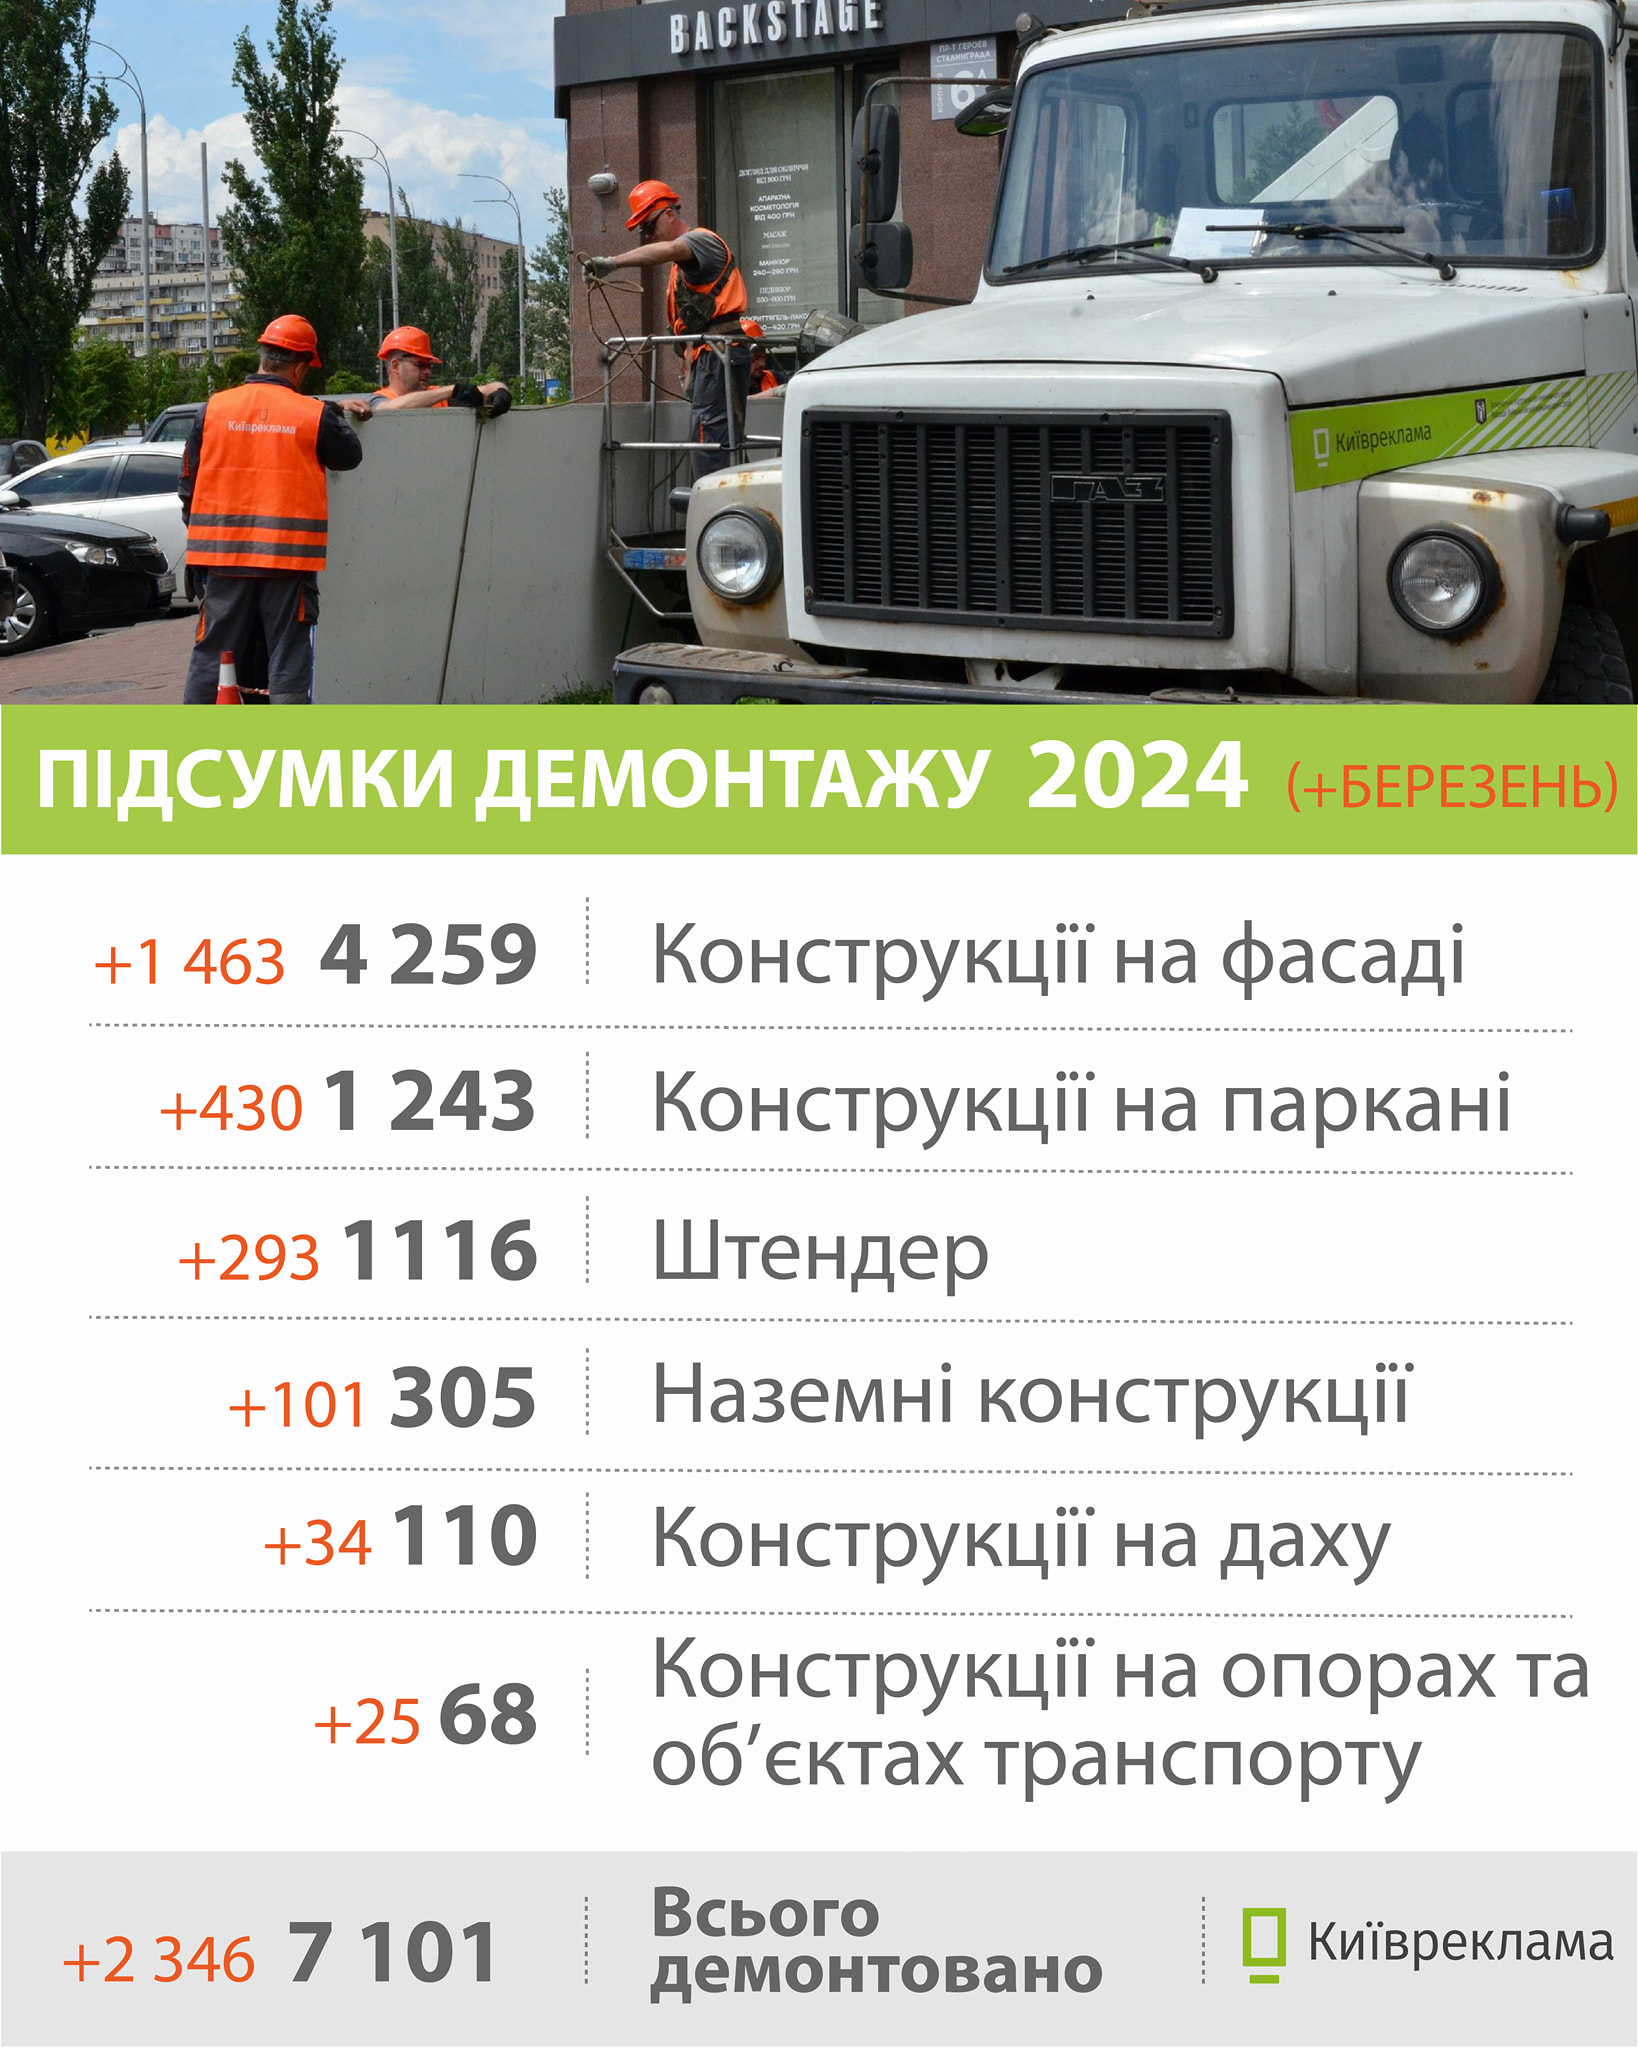 У березні 2024 року в Києві провели демонтаж 2346 незаконних вивісок та рекламних засобів